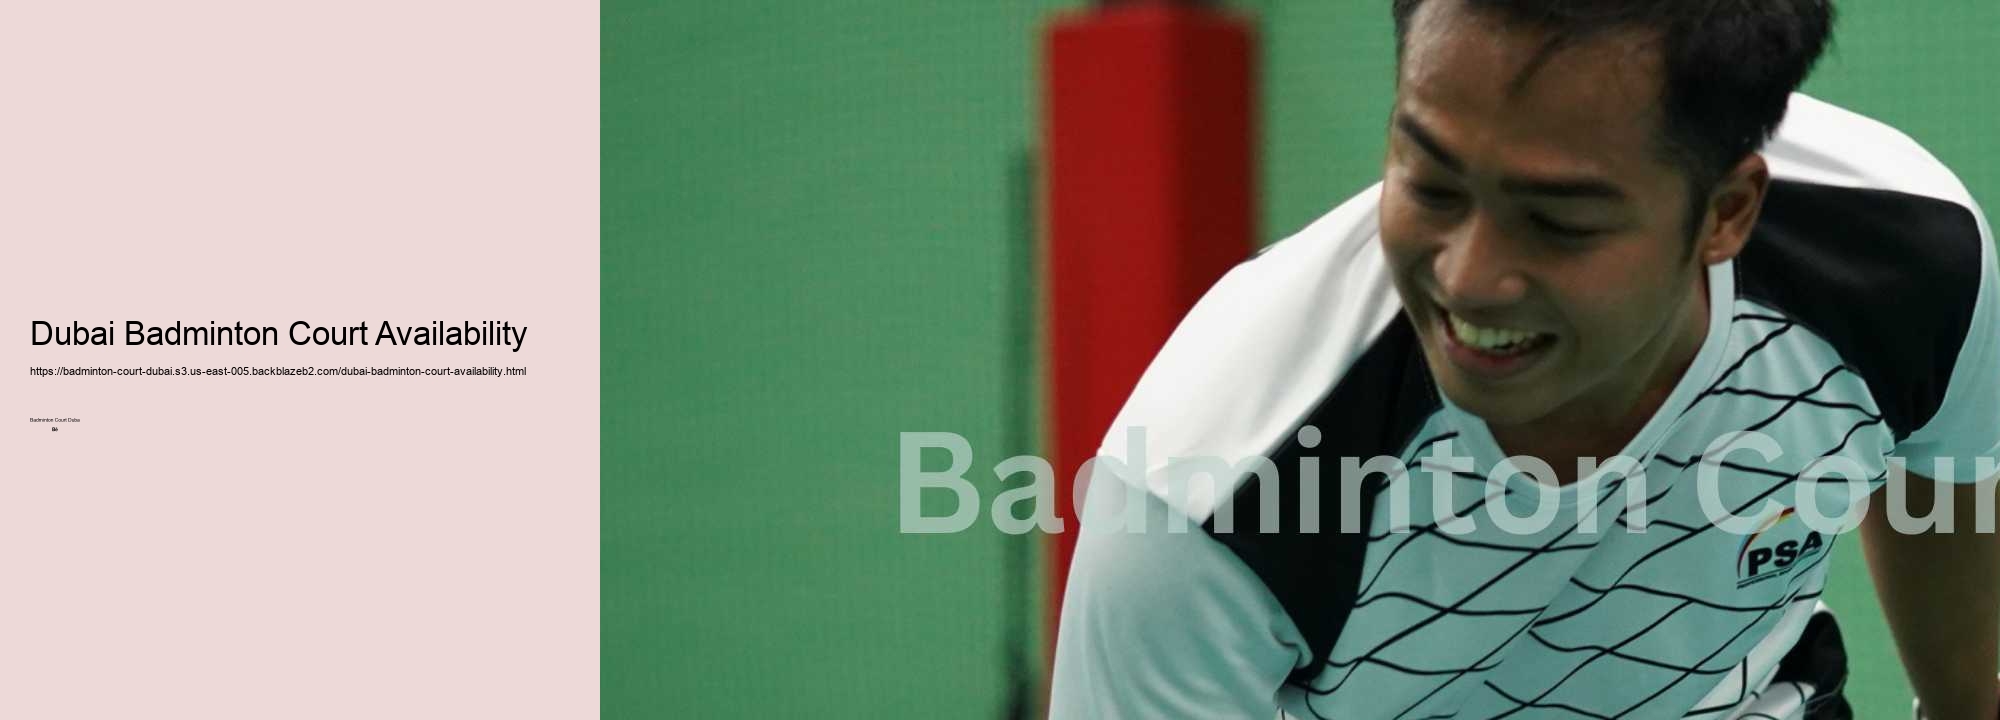 Dubai Badminton Court Availability